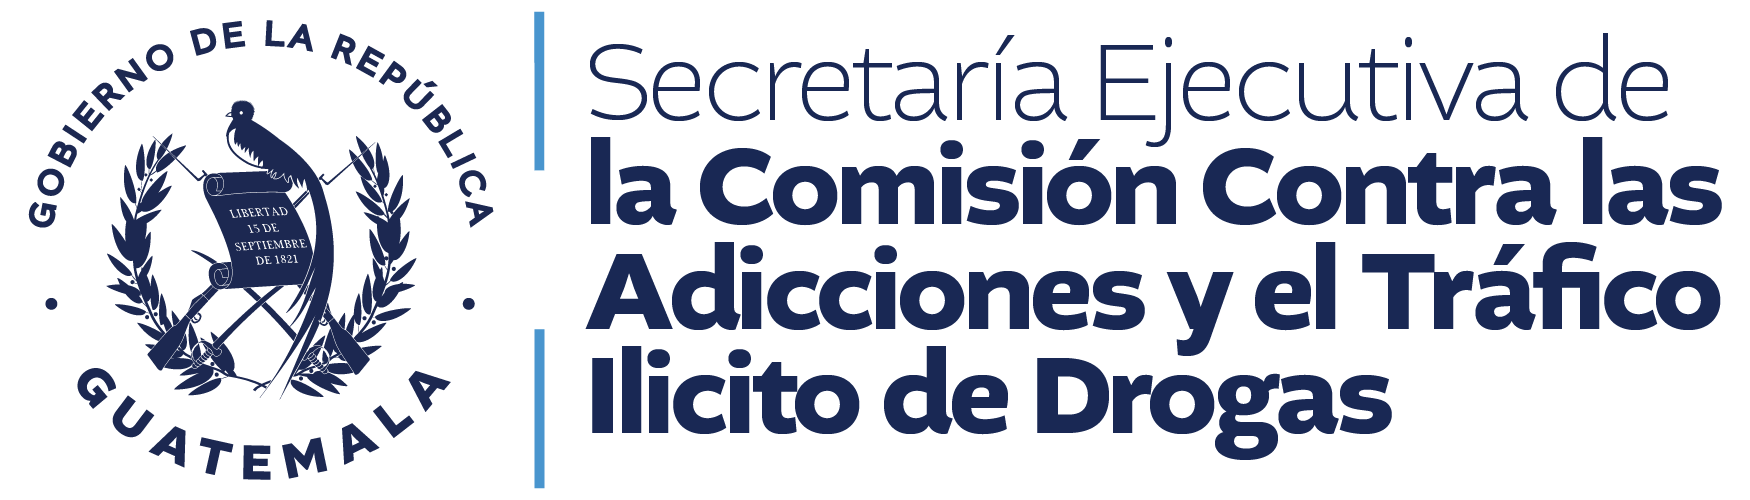 Secretaria Ejecutiva de la Comision Contra las Adicciones y el Trafico Ilicito de Drogas SECCATID 01